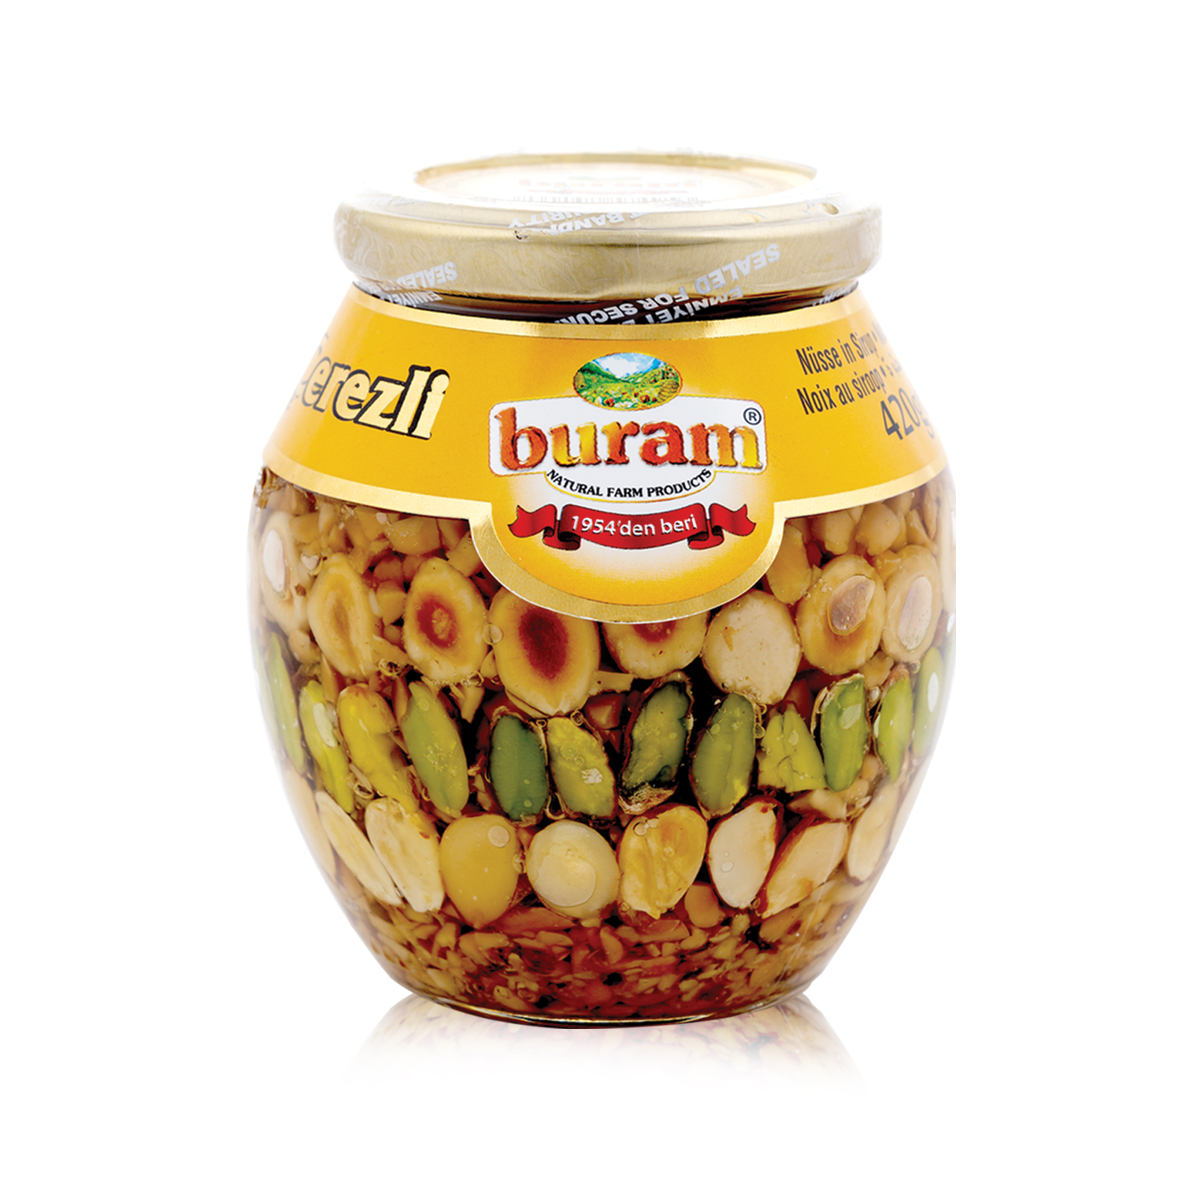 Buram-Süße-Nüsse-450g